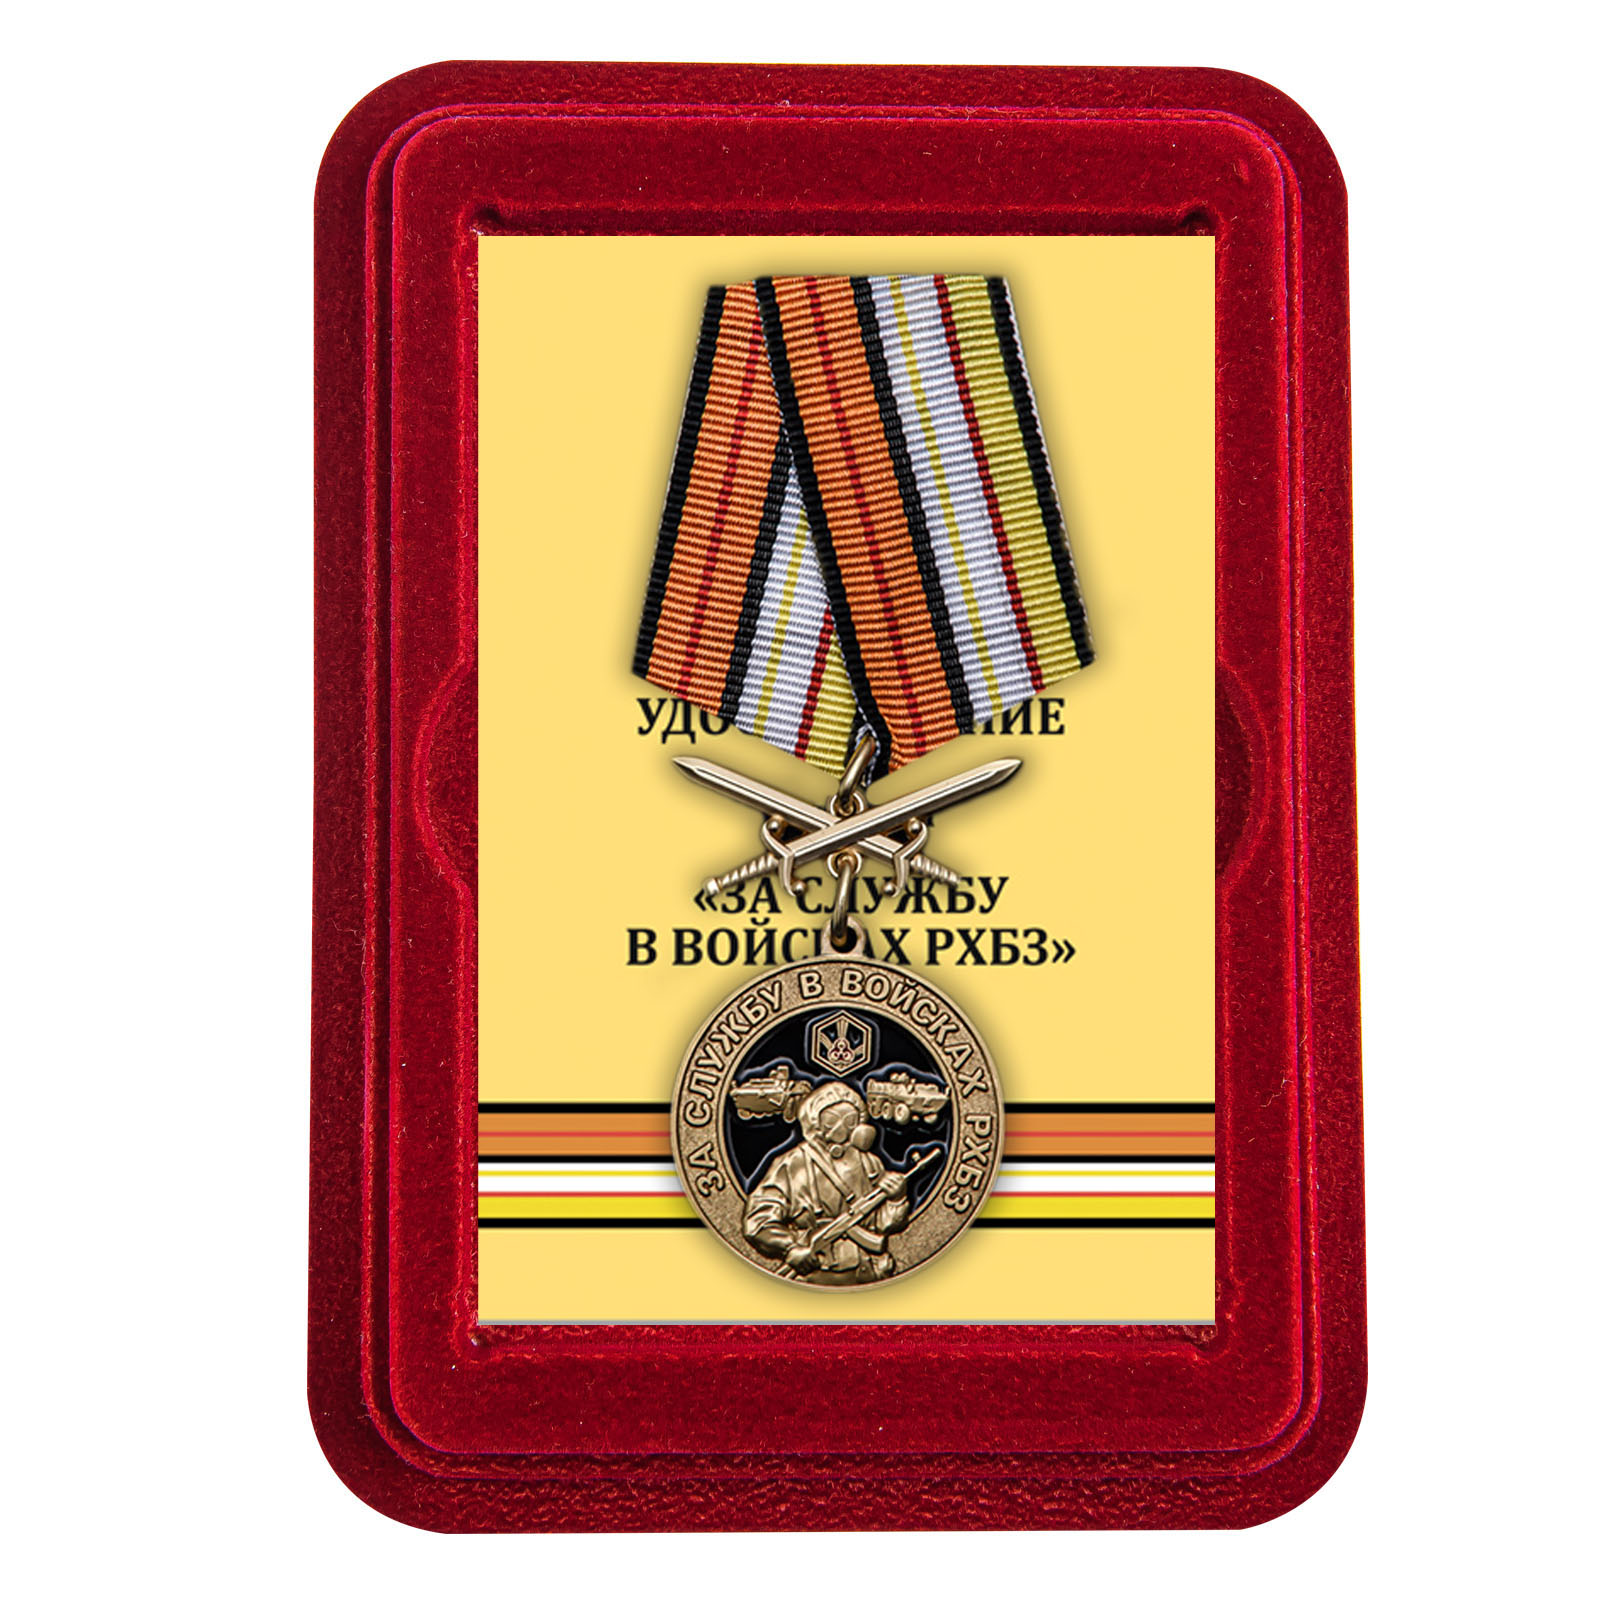 Купить медаль За службу в Войсках РХБЗ выгодно в подарок